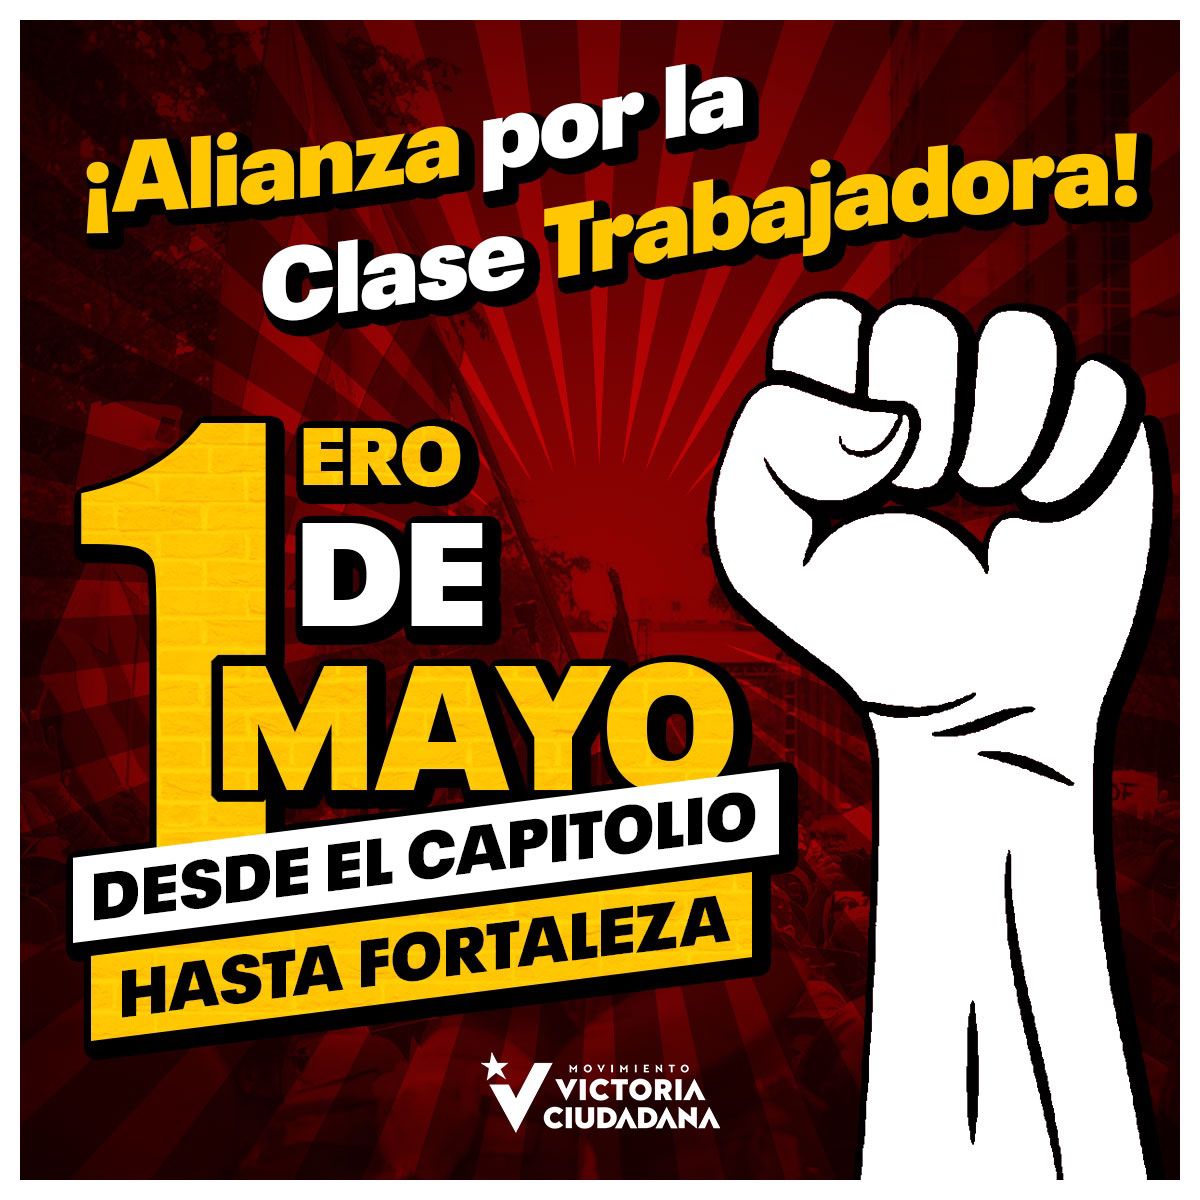 Por una Alianza de País que defienda los derechos de nuestra clase trabajadora salimos este 1 de mayo en el Día Internacional de los Trabajadores y Trabajadoras junto a la Jota y el PIP. 9am, desde el Capitolio a Fortaleza.